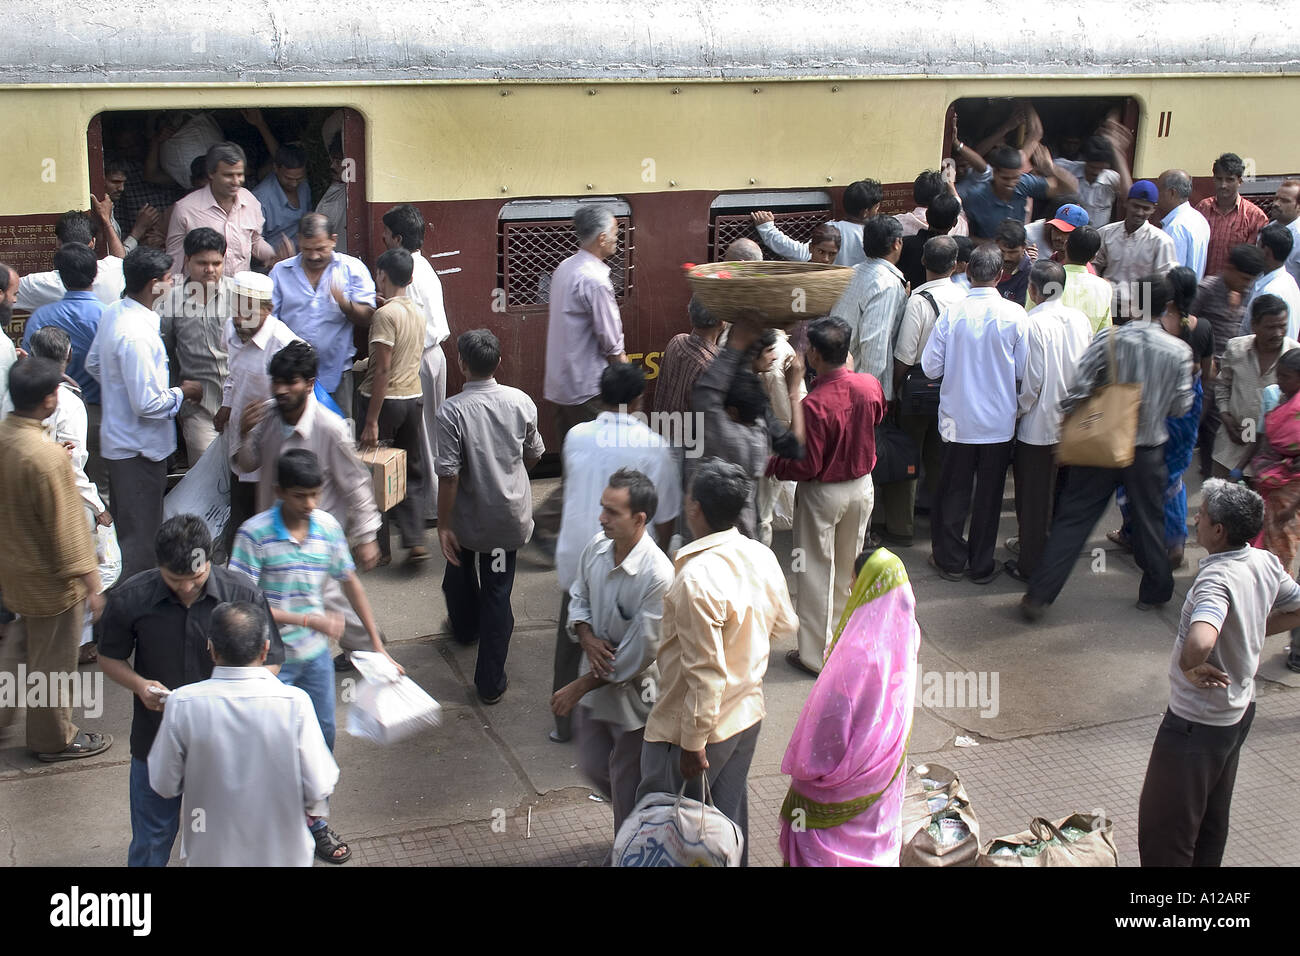 RSC75018 Indian Men Crowded Local Train Railways Platform Mumbai Maharashtra India Stock Photo